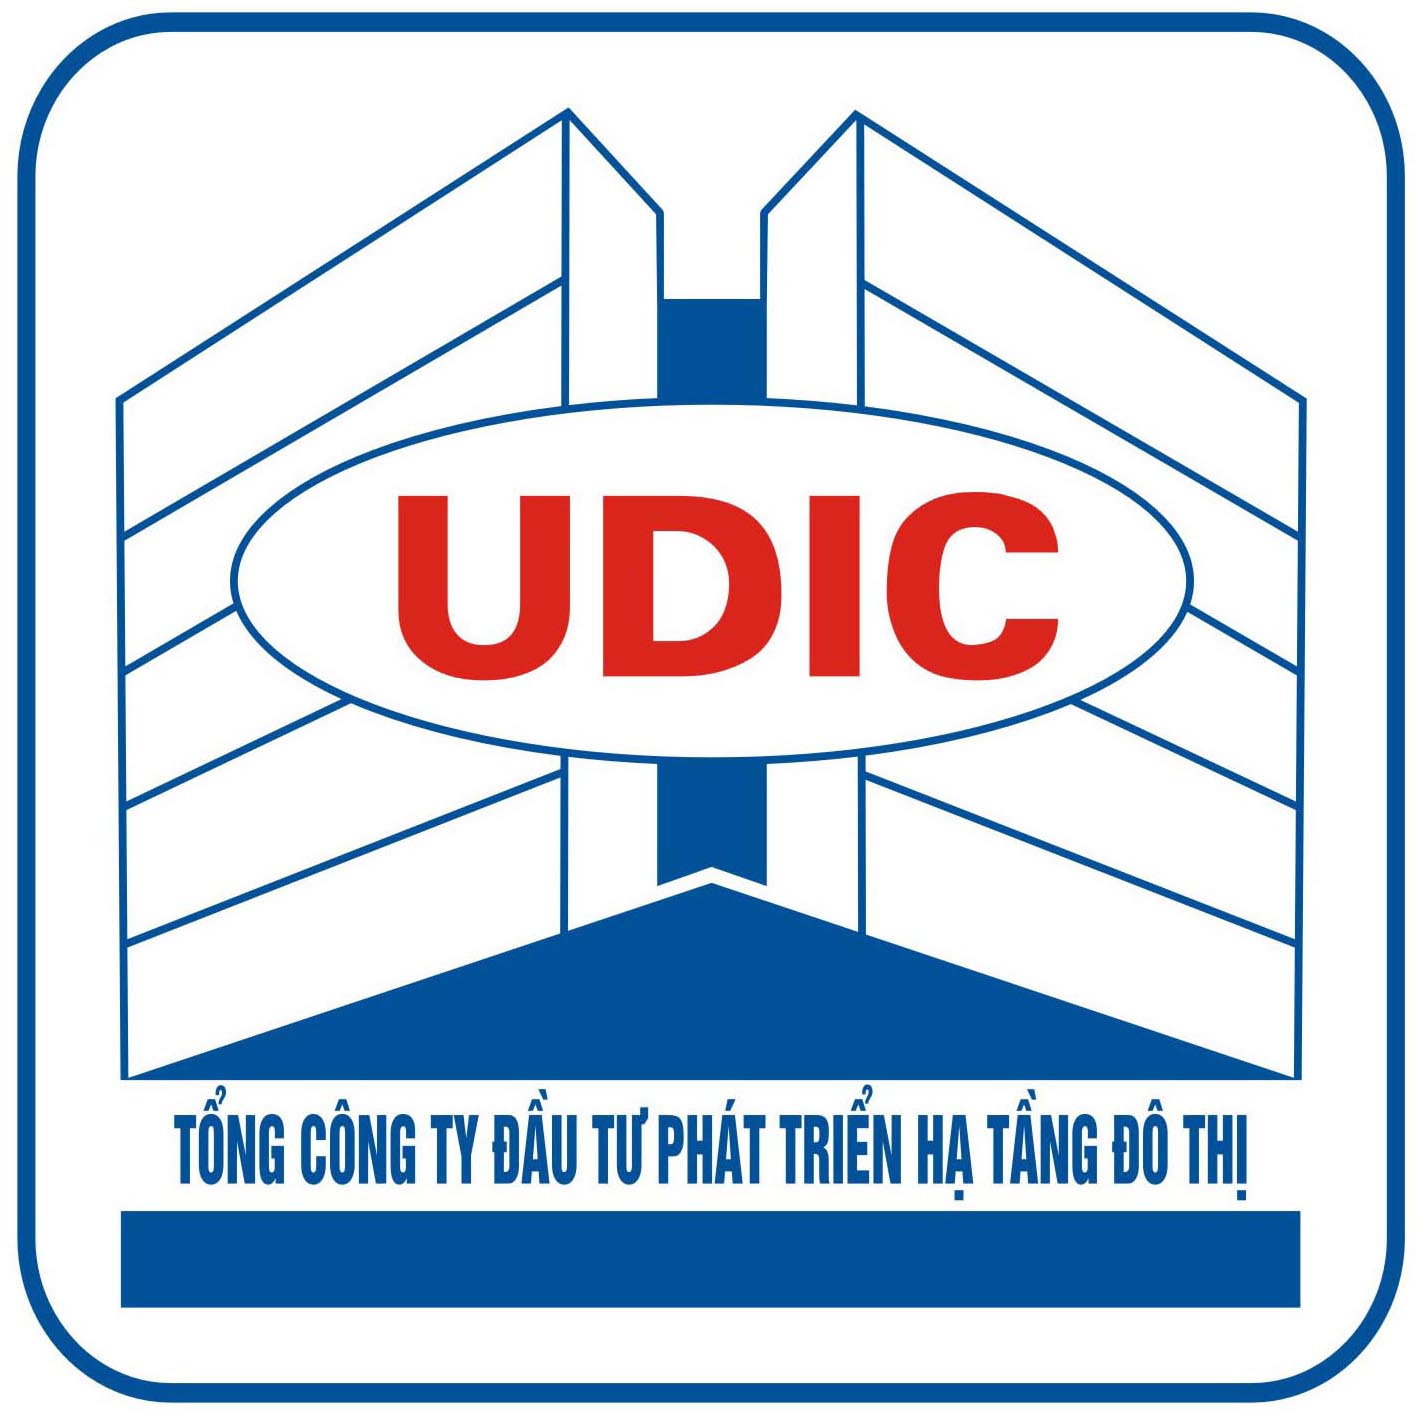 Tổng Công ty UDIC